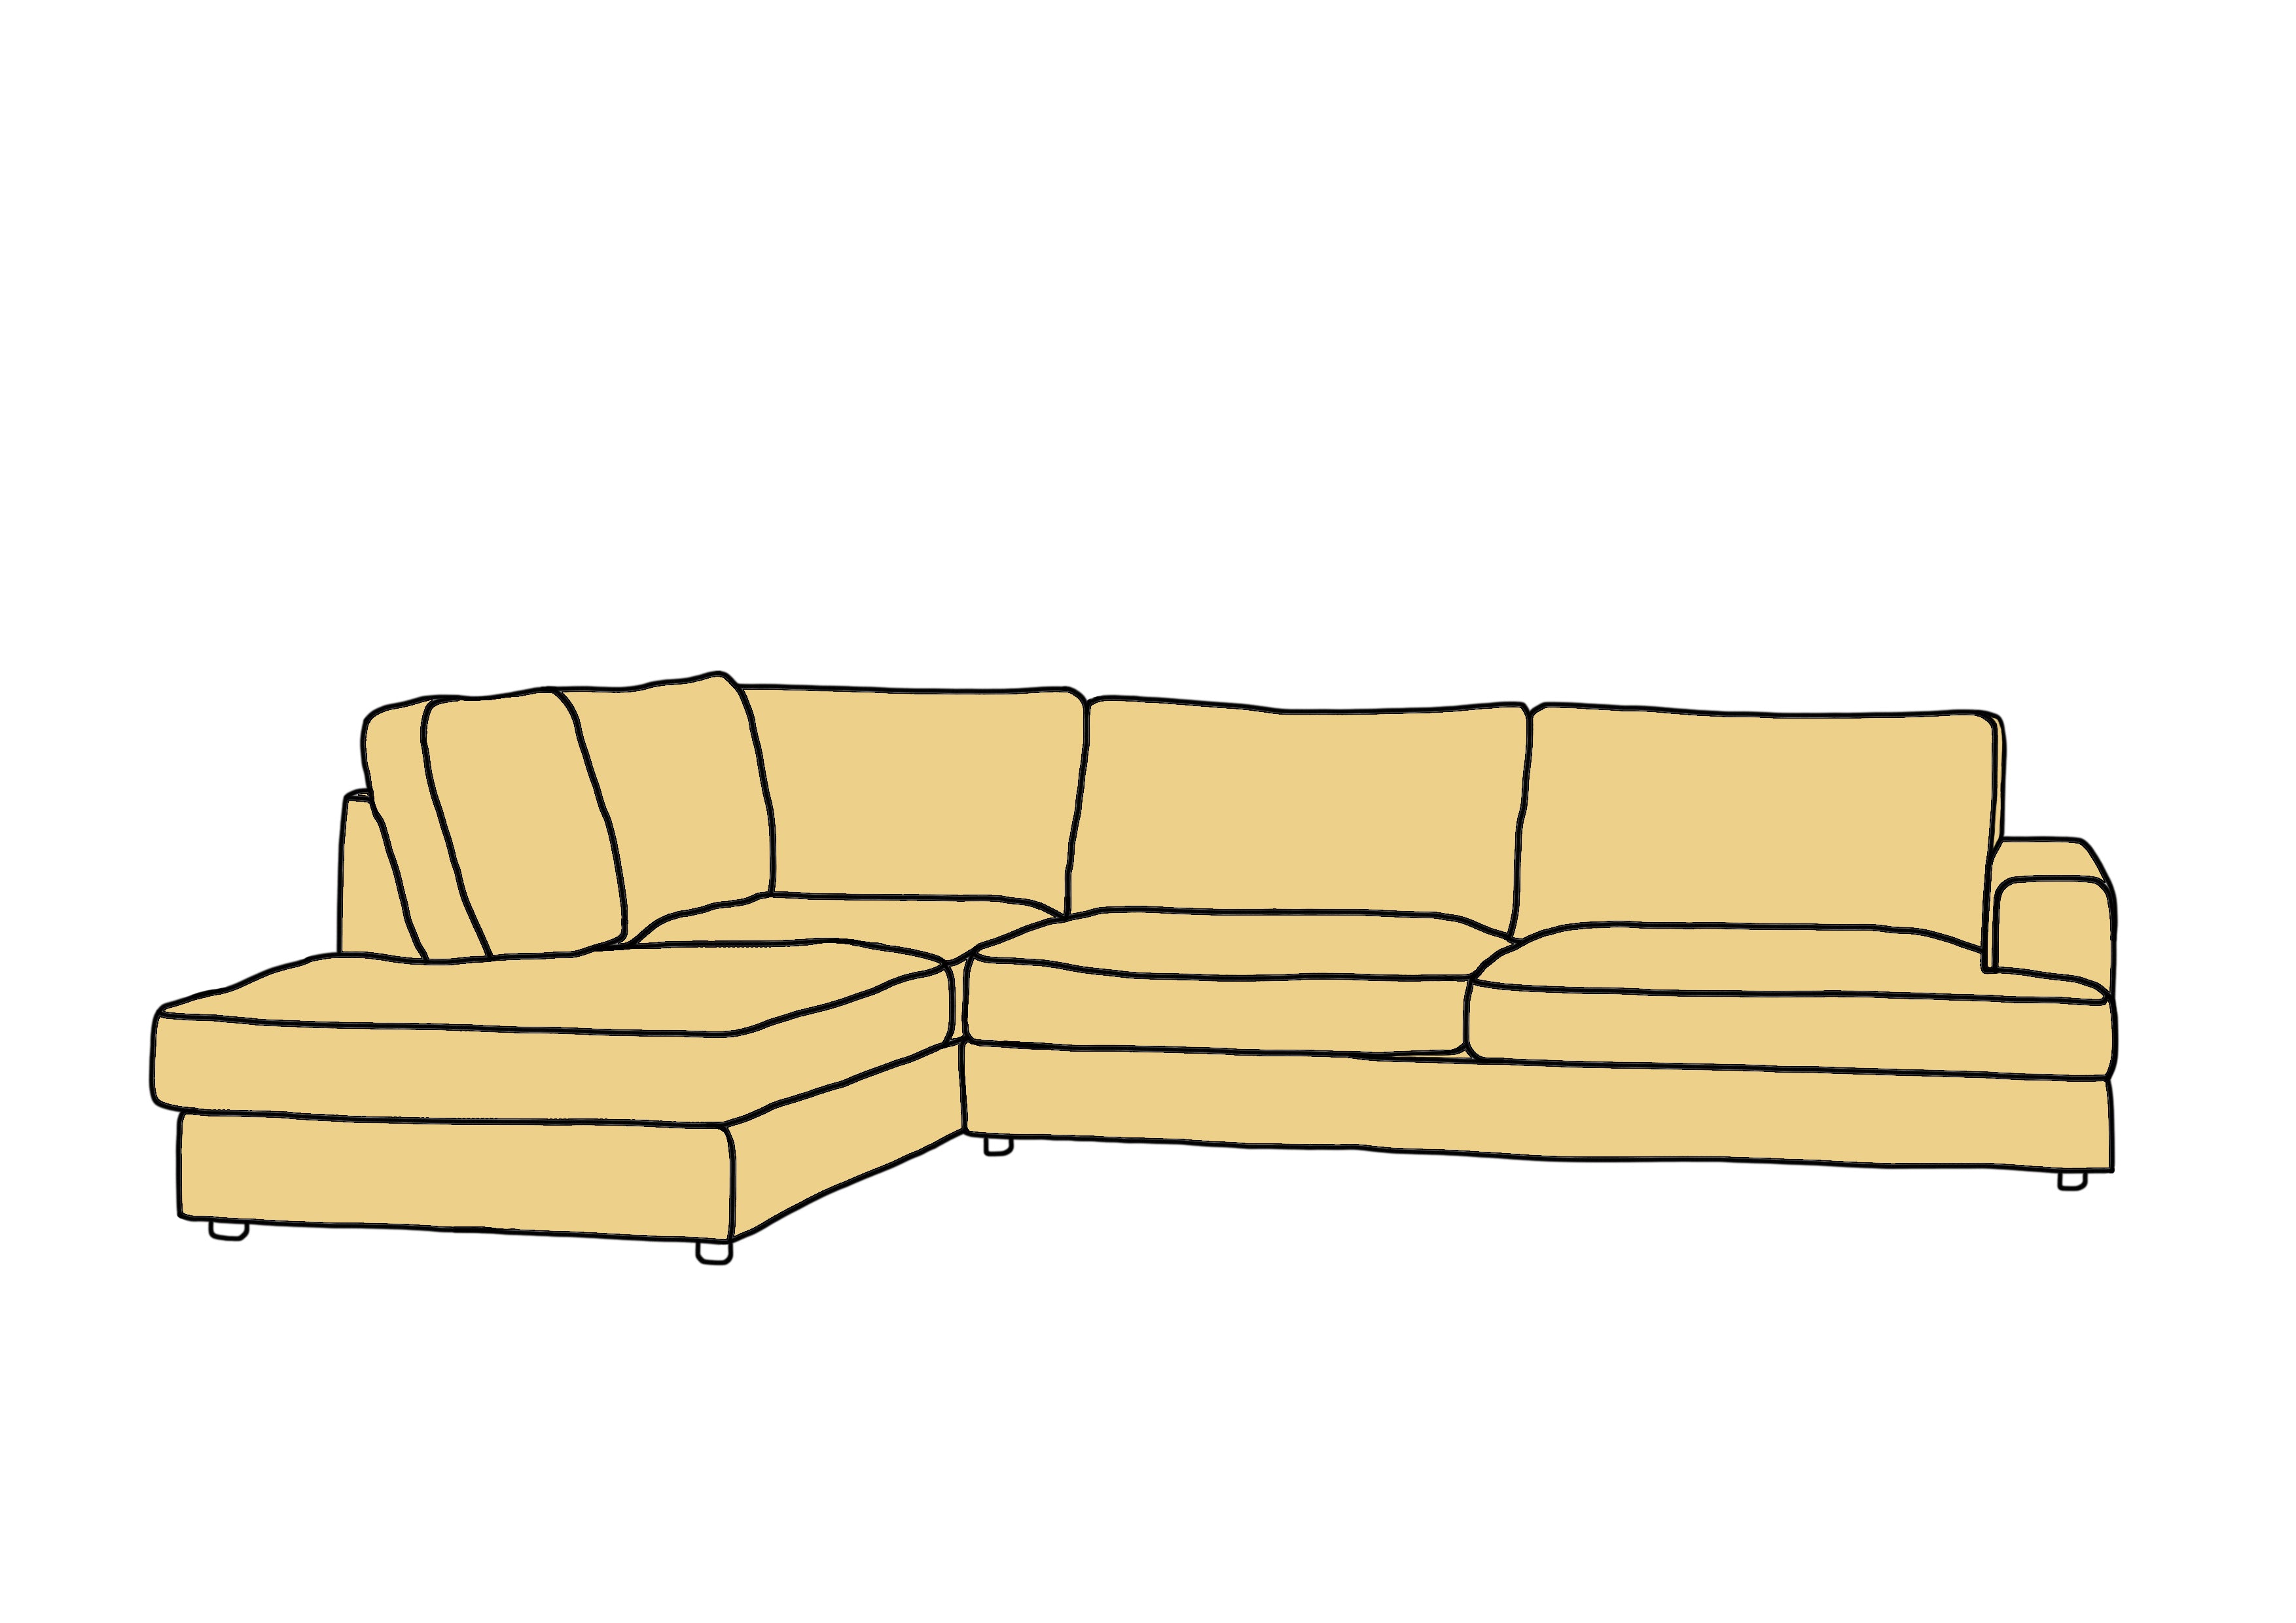 NZ made Cloud sofa